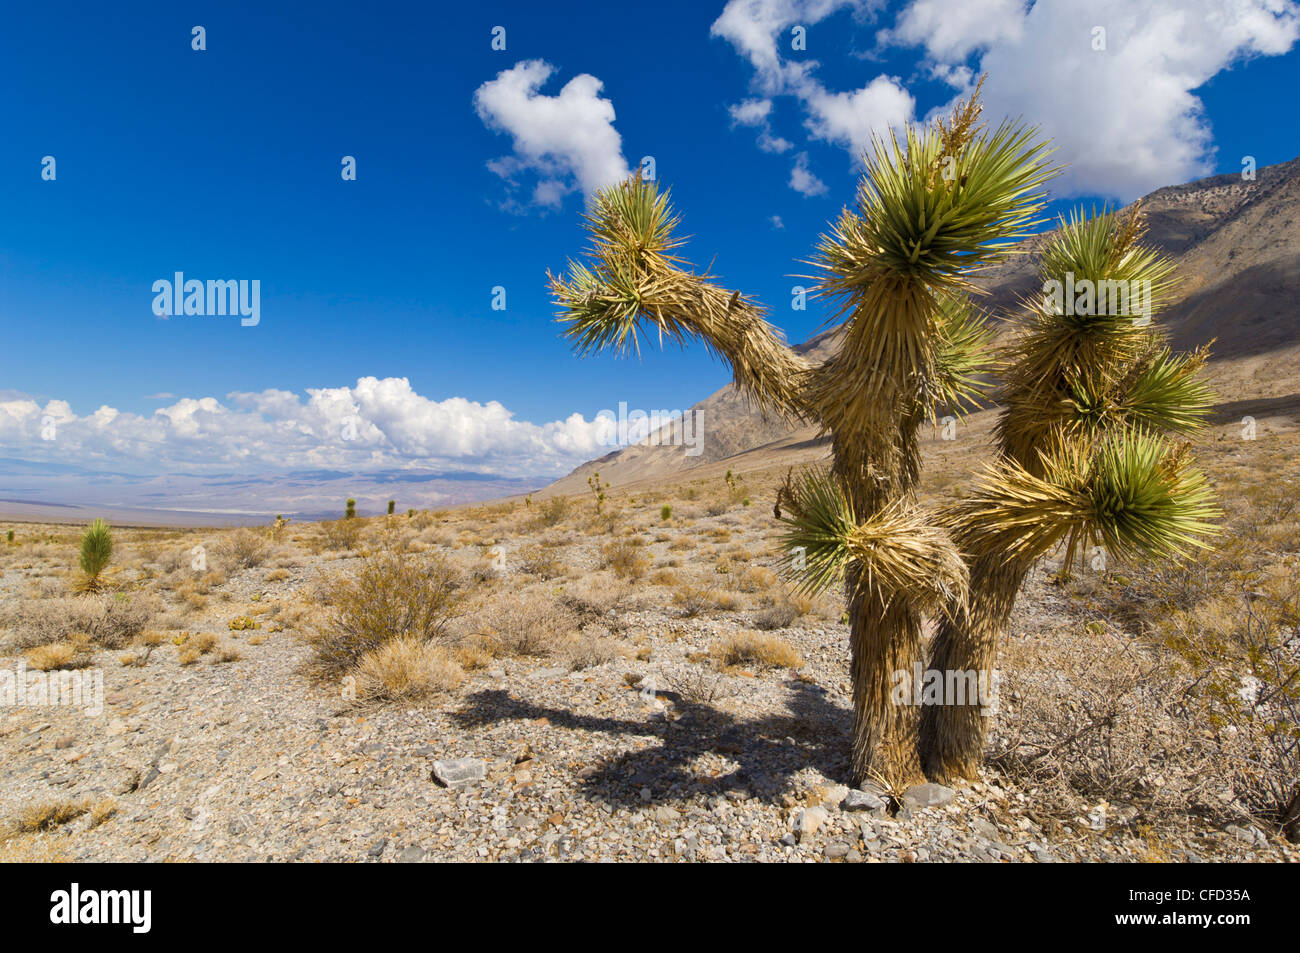 Joshua Baum Wald (Yucca Brevifolia), auf der Rennstrecke Straße, Death Valley Nationalpark, Kalifornien, Vereinigte Staaten von Amerika Stockfoto